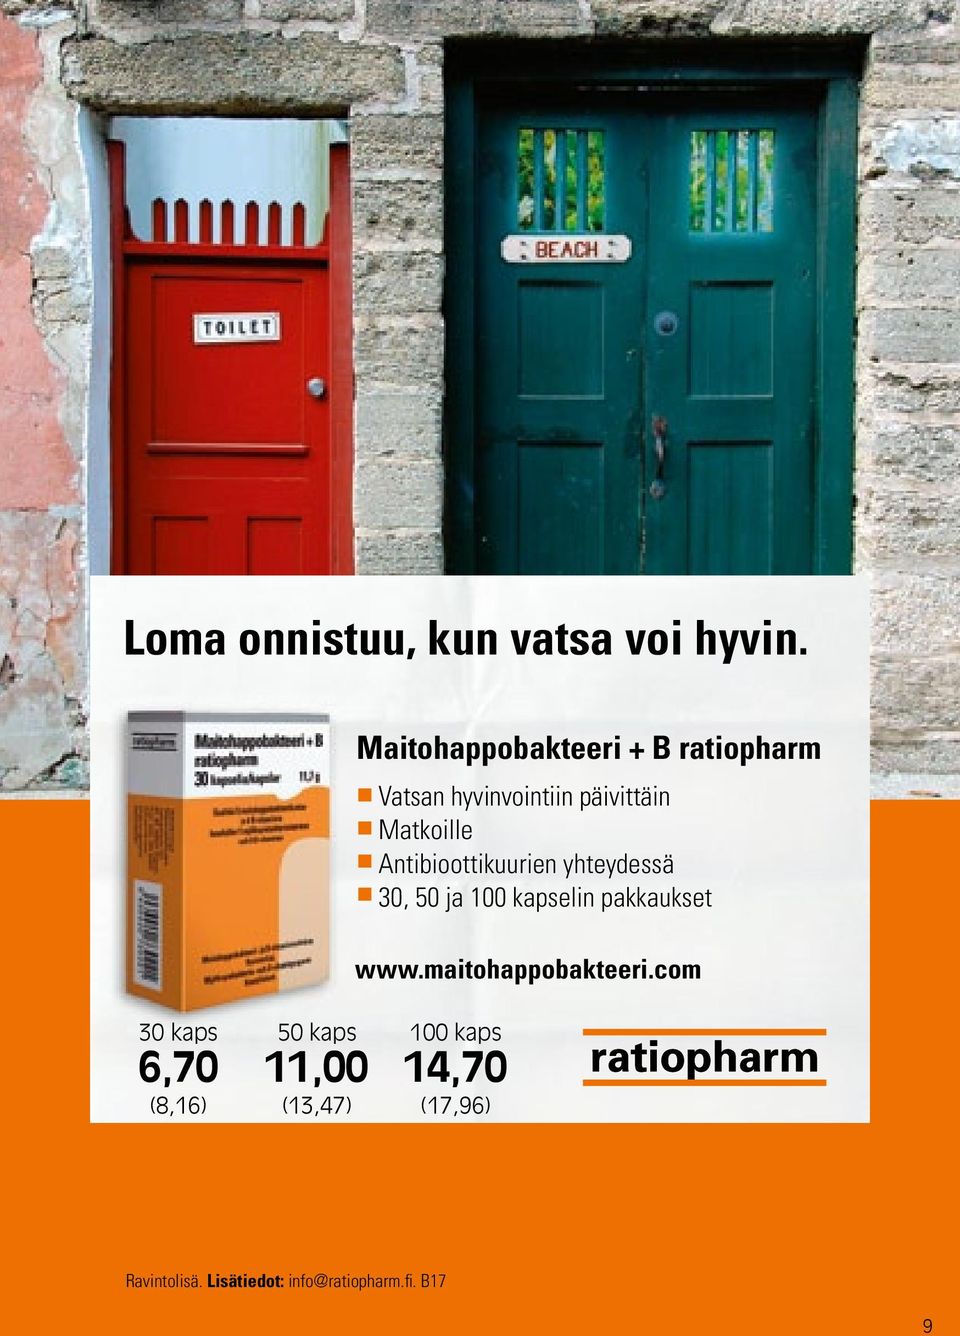 Antibioottikuurien yhteydessä 30, 50 ja 100 kapselin pakkaukset www.